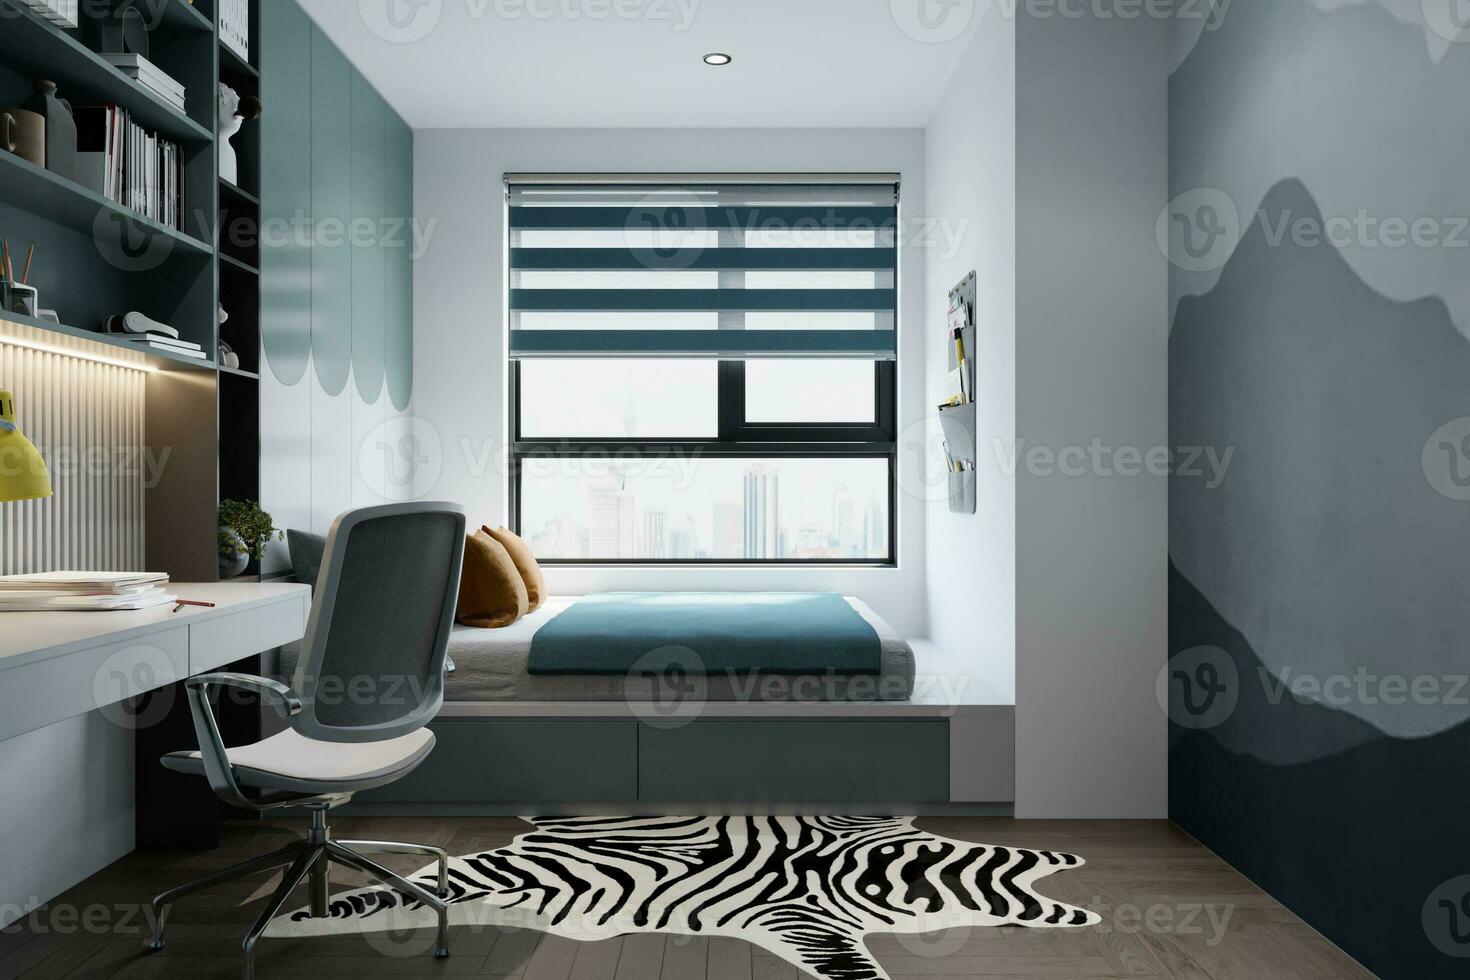 grå säng Nästa till de fönster, dray grå vägg måla och hylla, tabell, stol i sovrum interiör, 3d tolkning foto